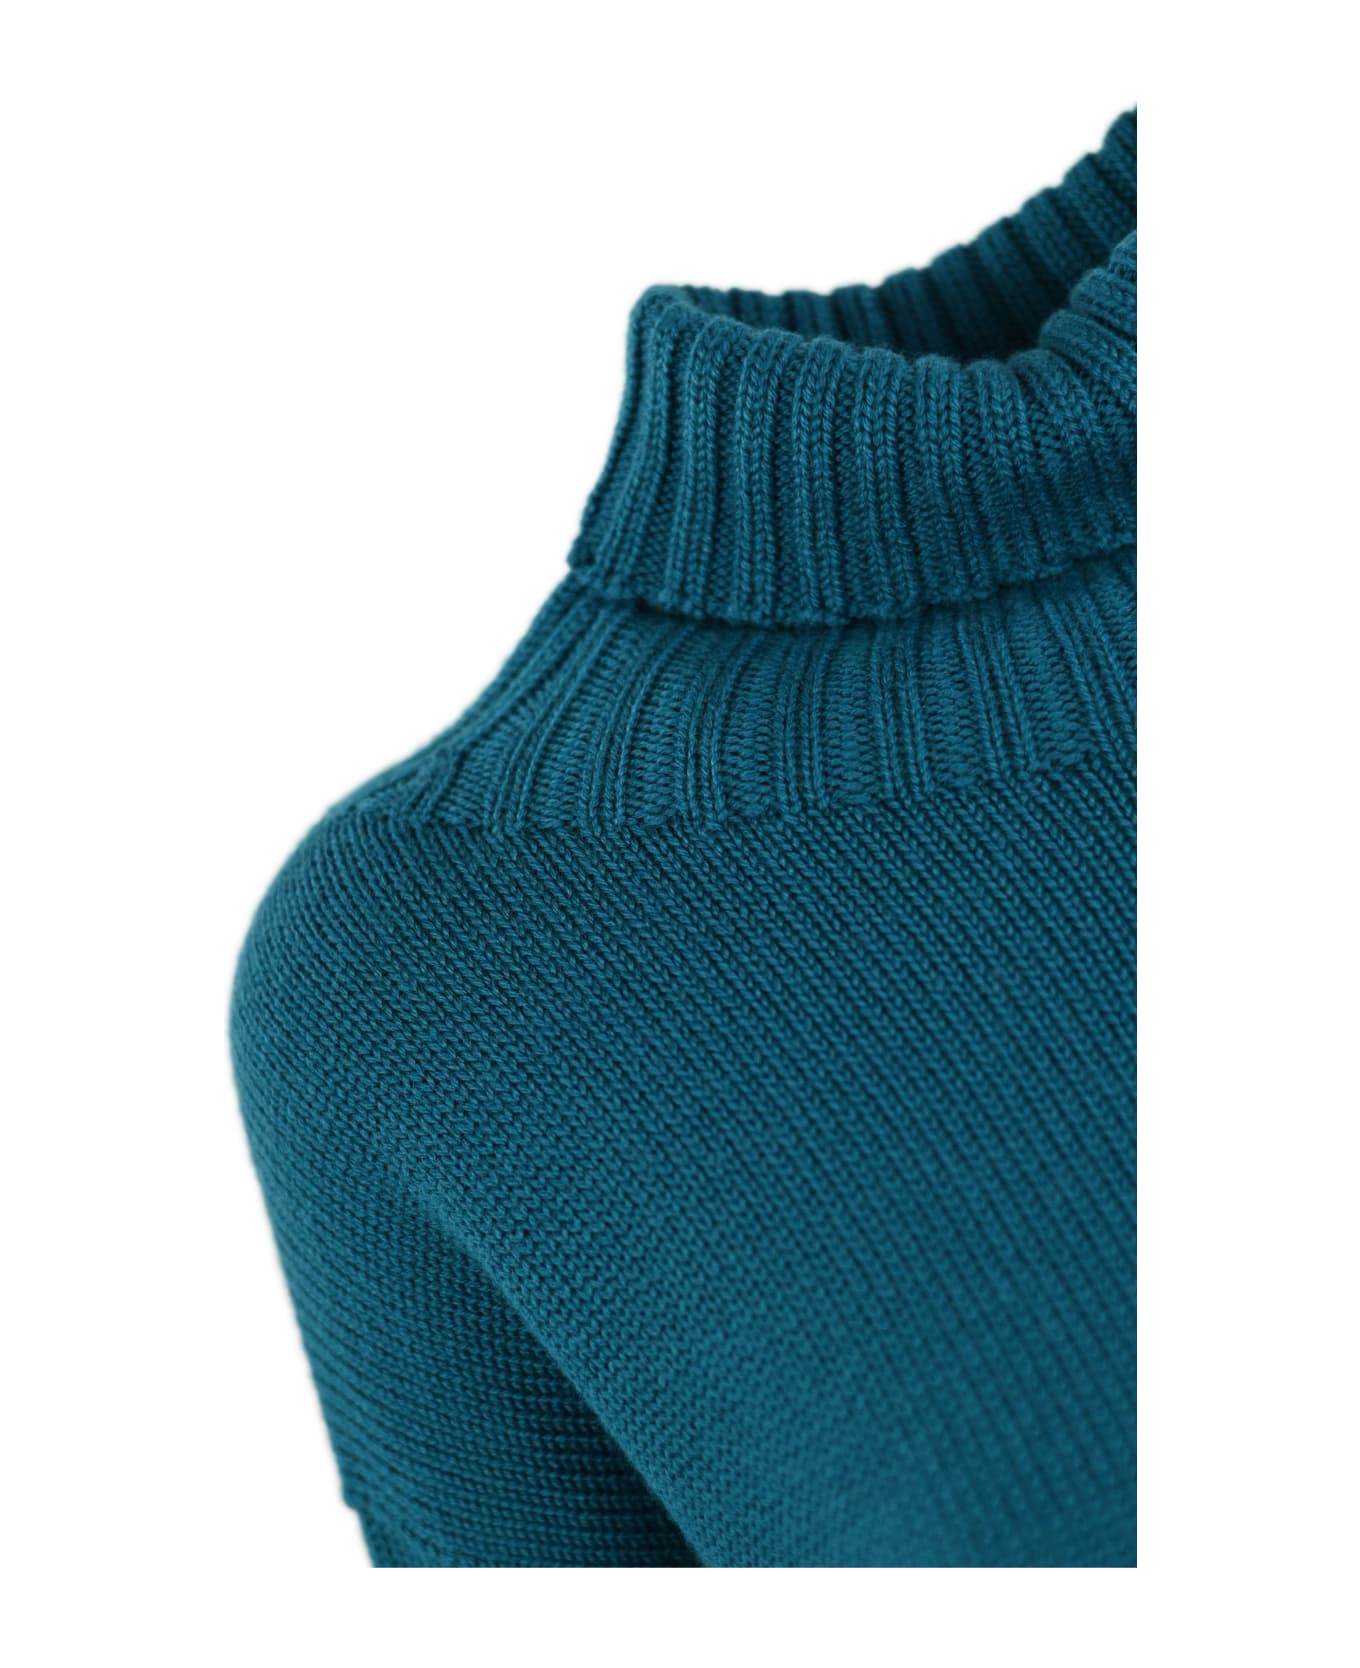 Drumohr High Neck Sweater - Turchese ニットウェア